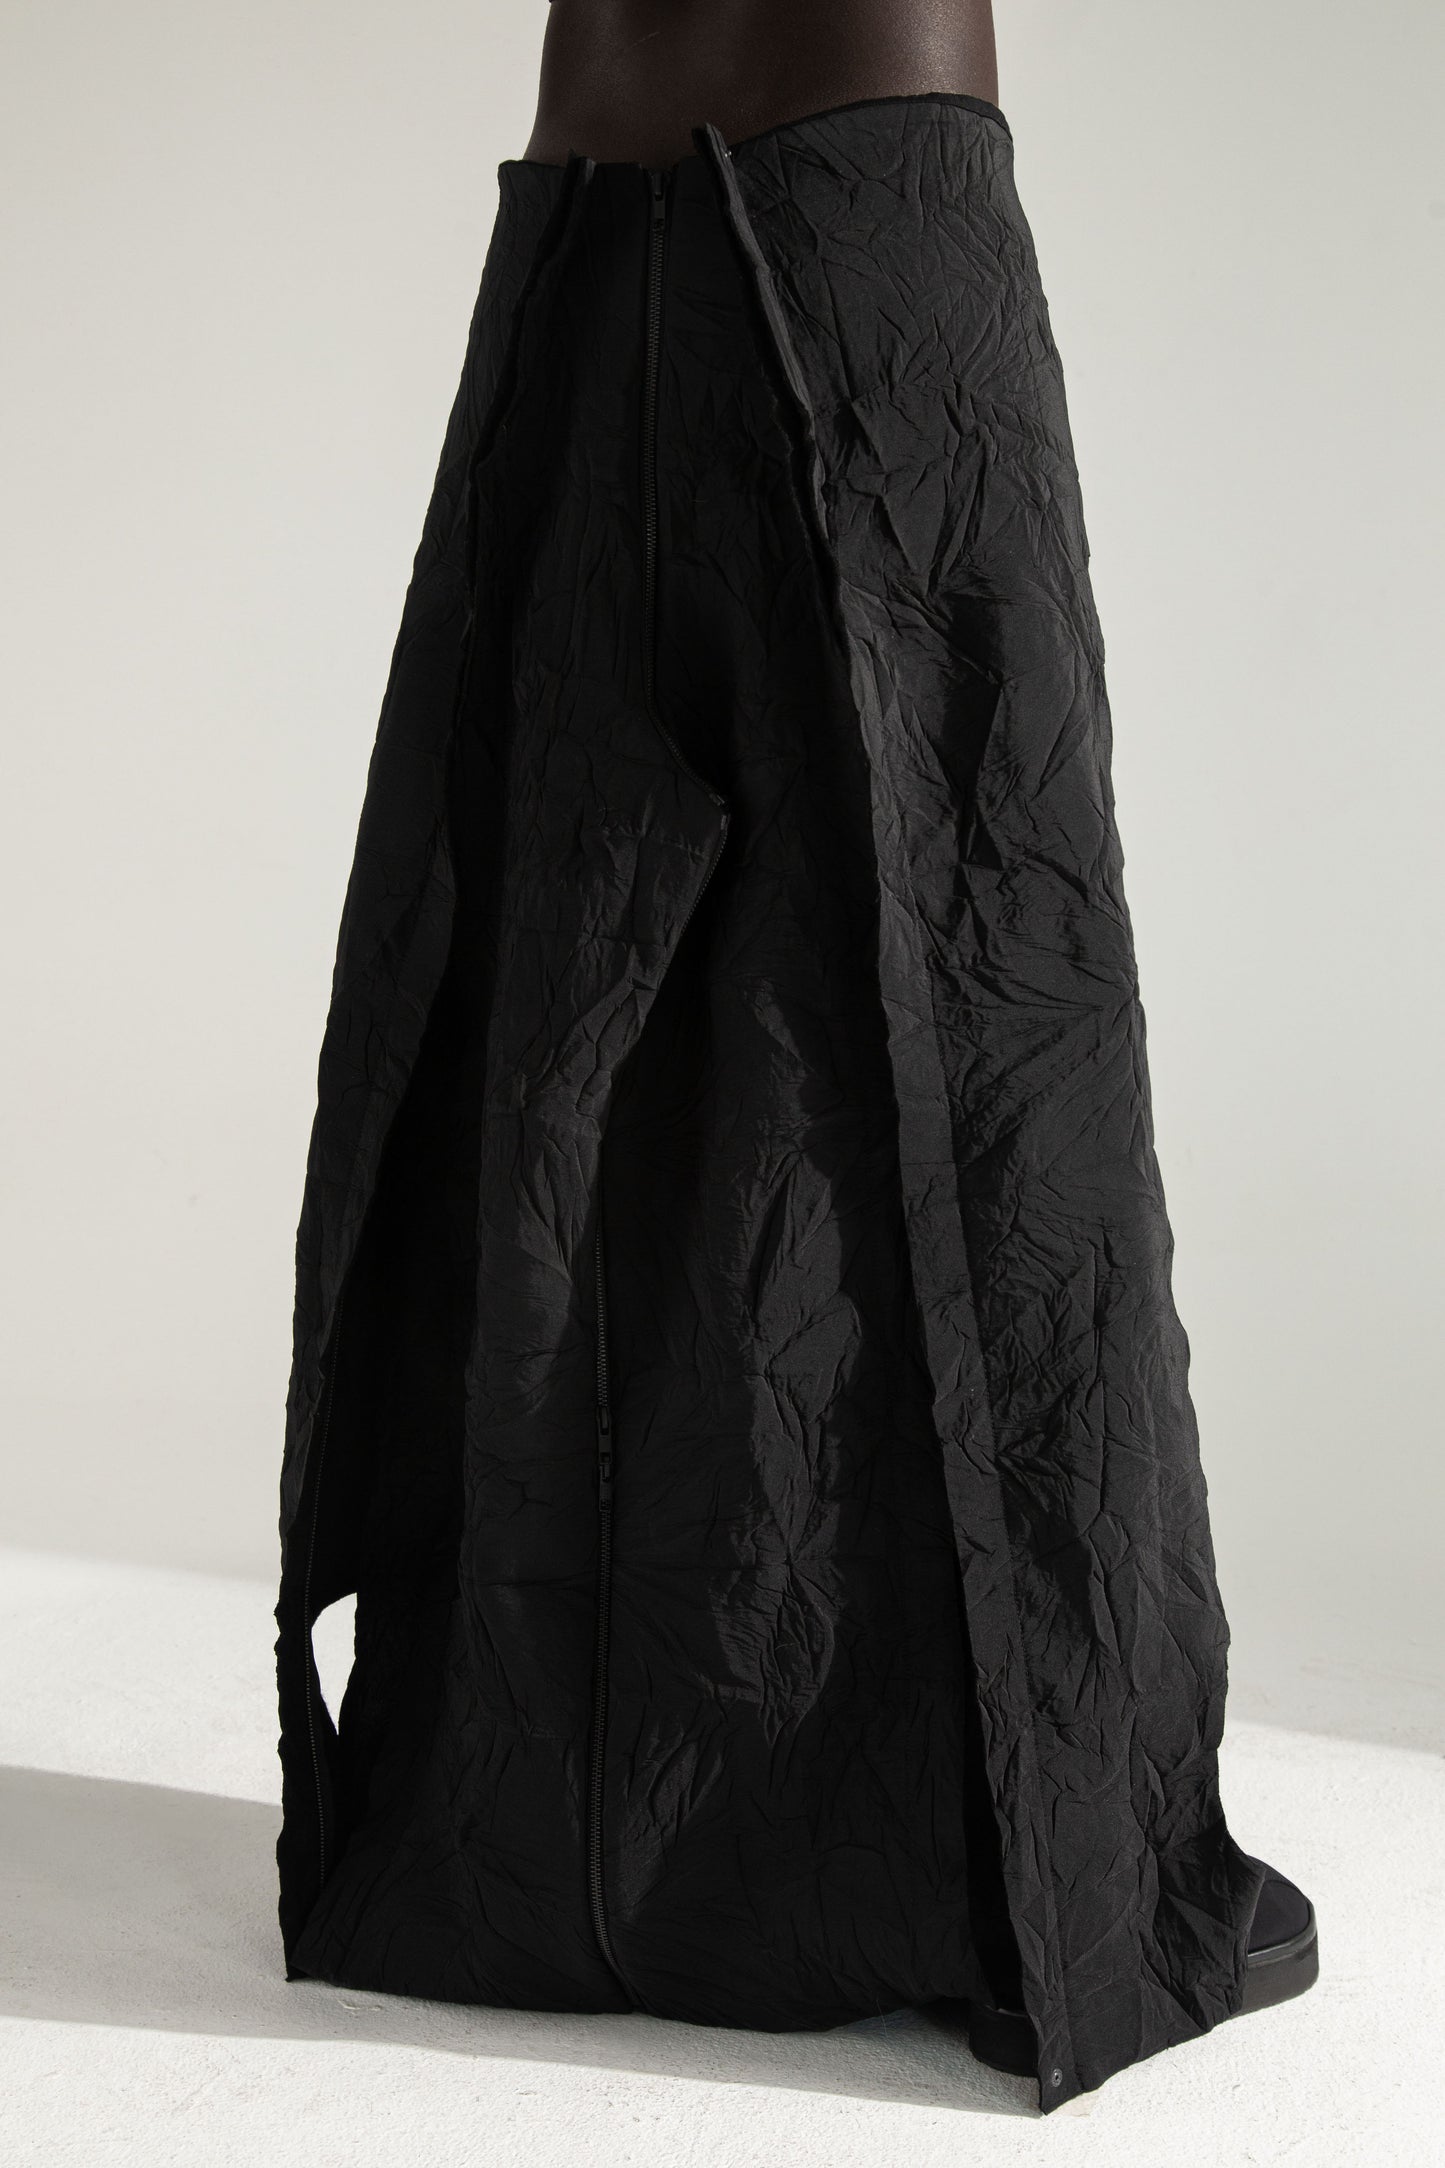 ESCAPE
9-way transforming piece: trousers, jumpsuit, dress, skirt, bag DZHUS